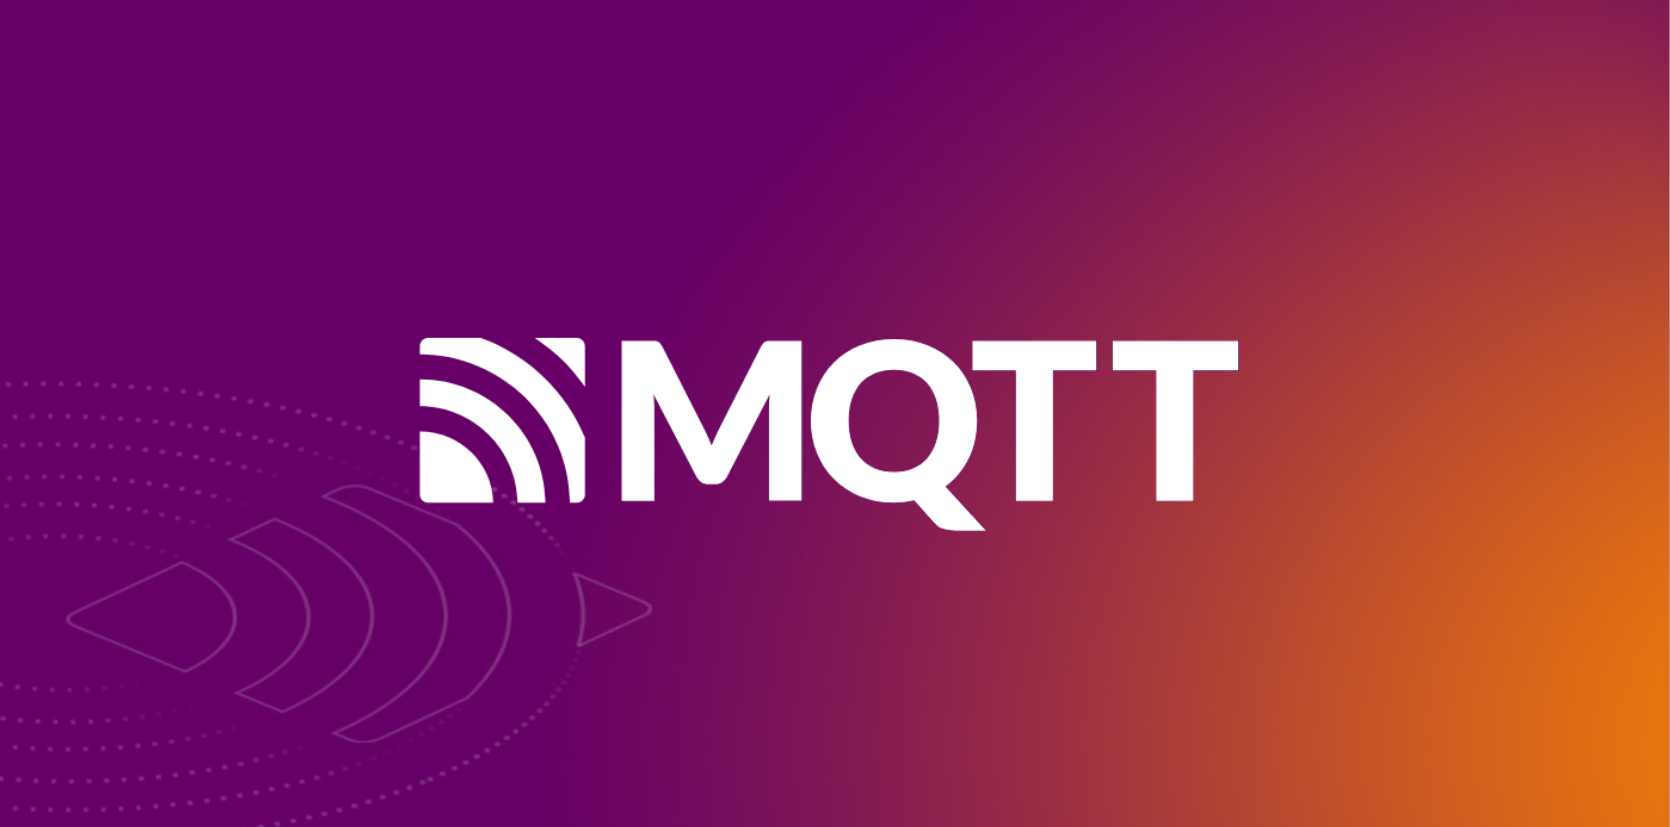 Was ist MQTT und seine Anwendung?